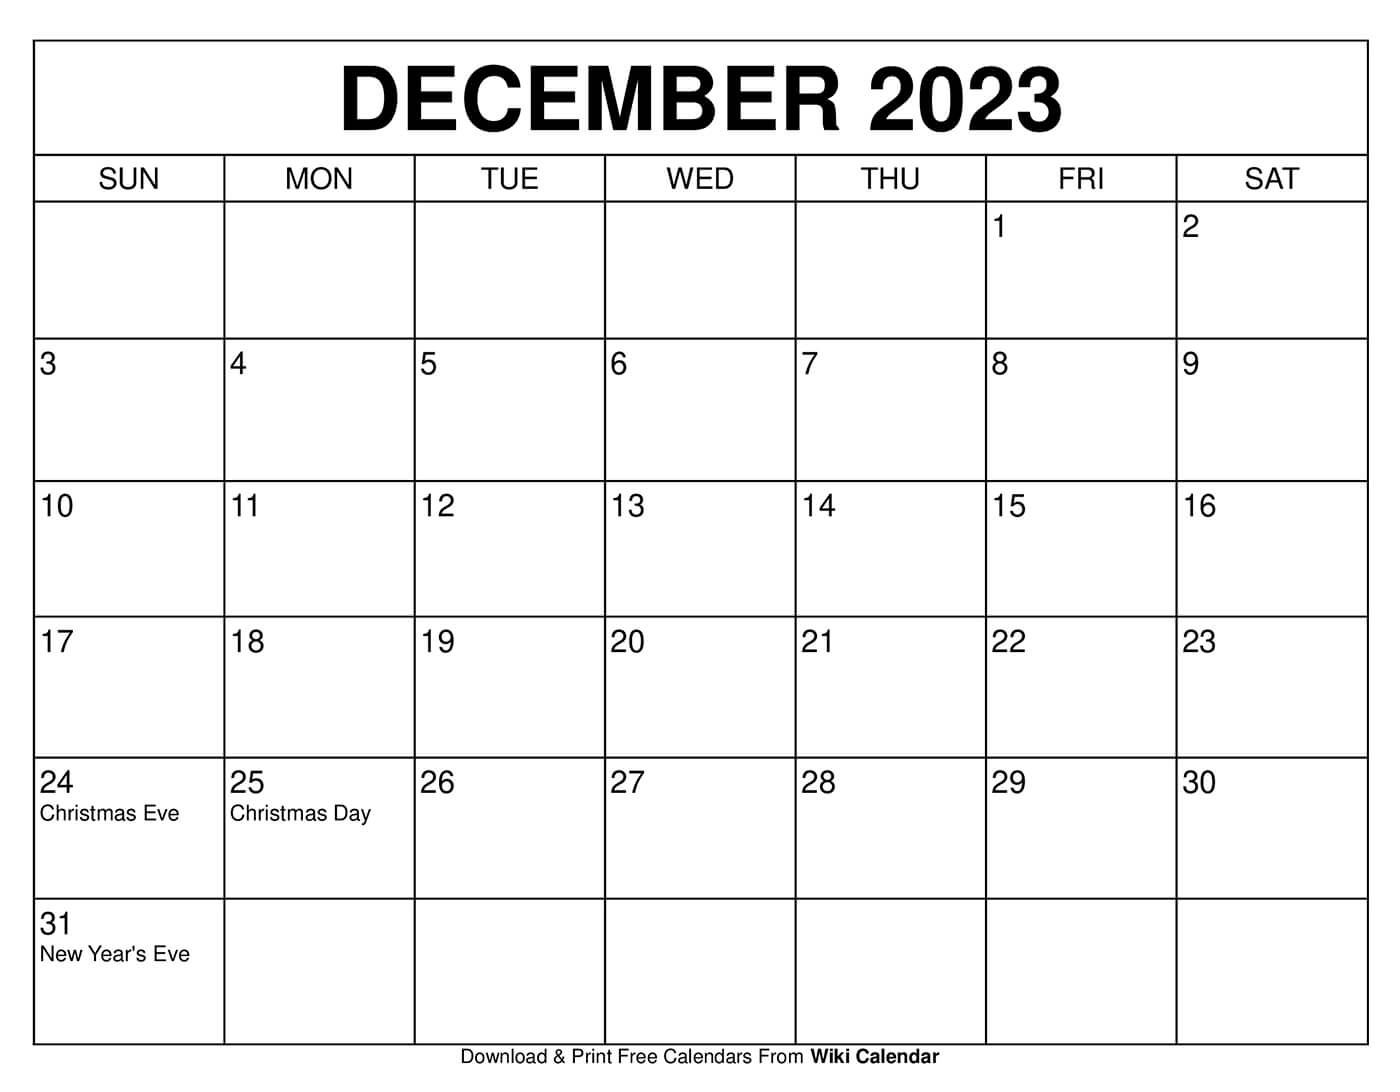 december-2023-calendar-of-holidays-get-latest-map-update